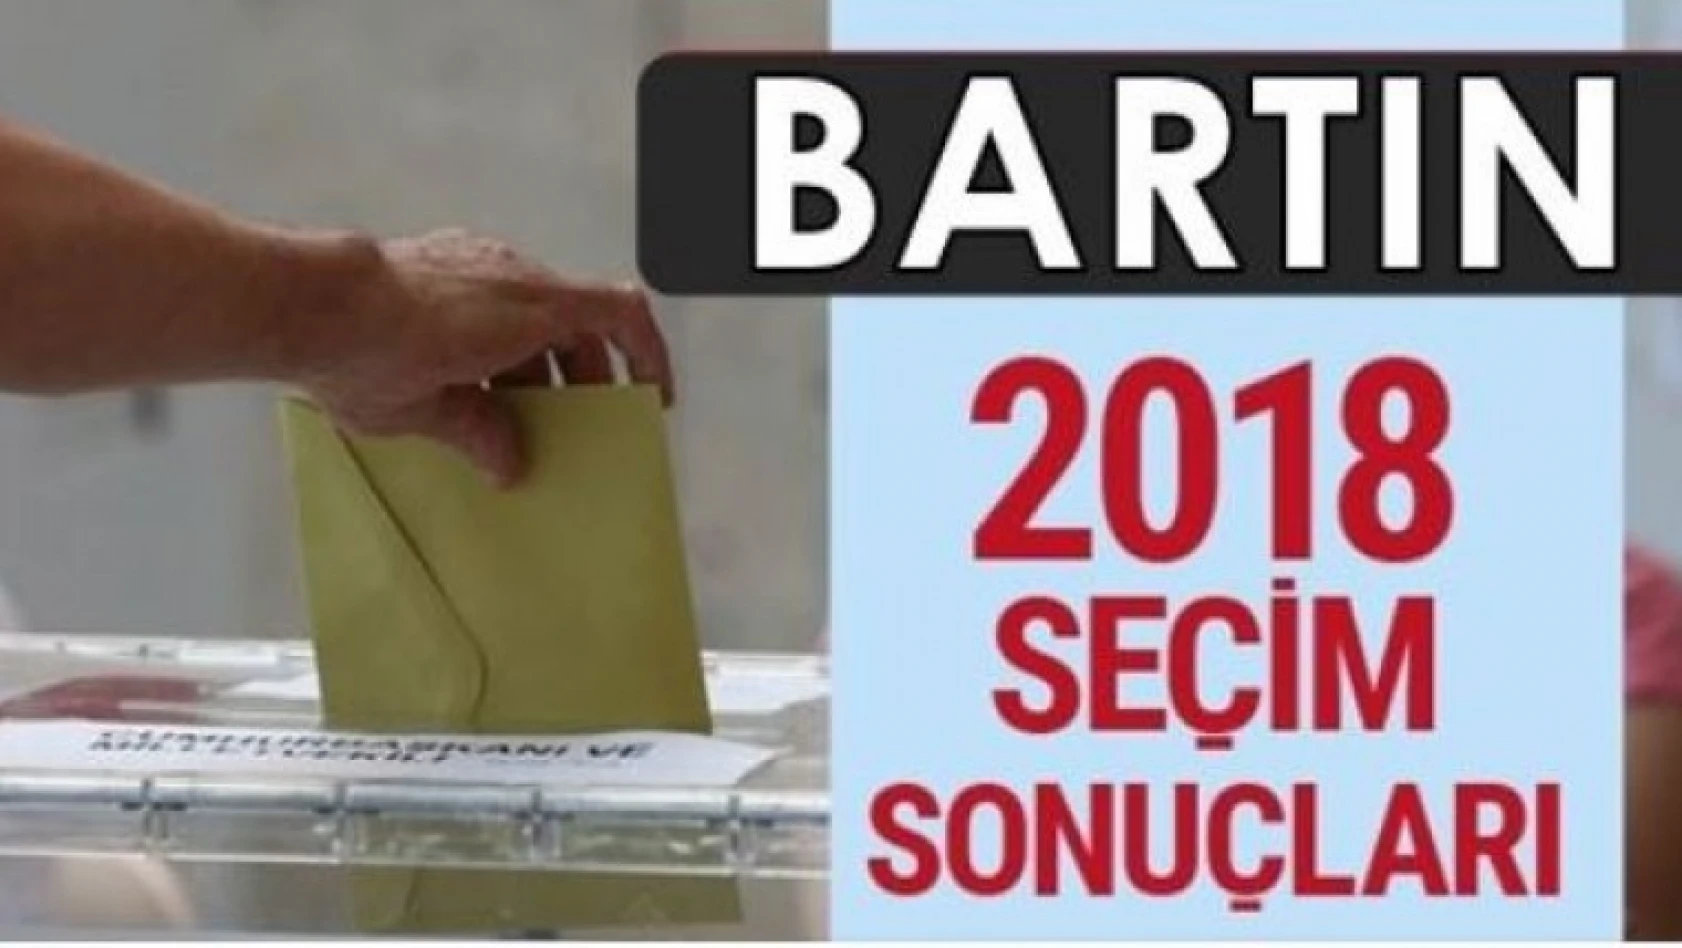 Bartın'da seçim sonuçları 2018